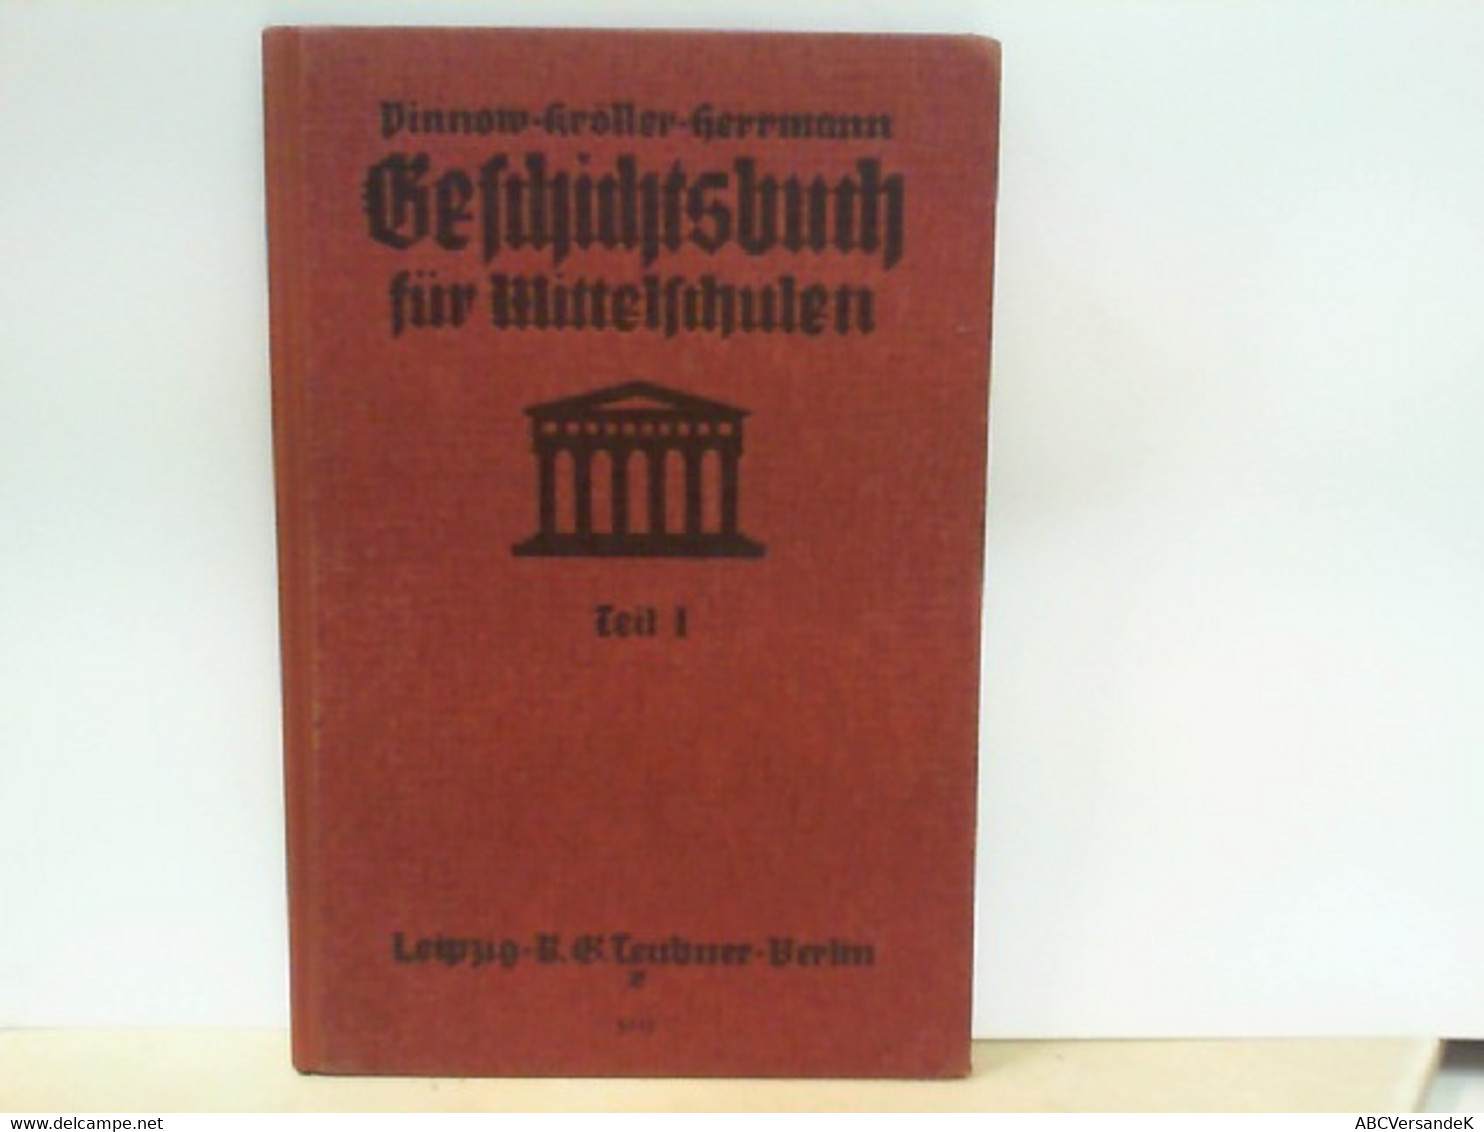 Pinnows Geschichtsbuch Für Mittelschulen - Teil 1 : Alte Geschichte - Schulbücher